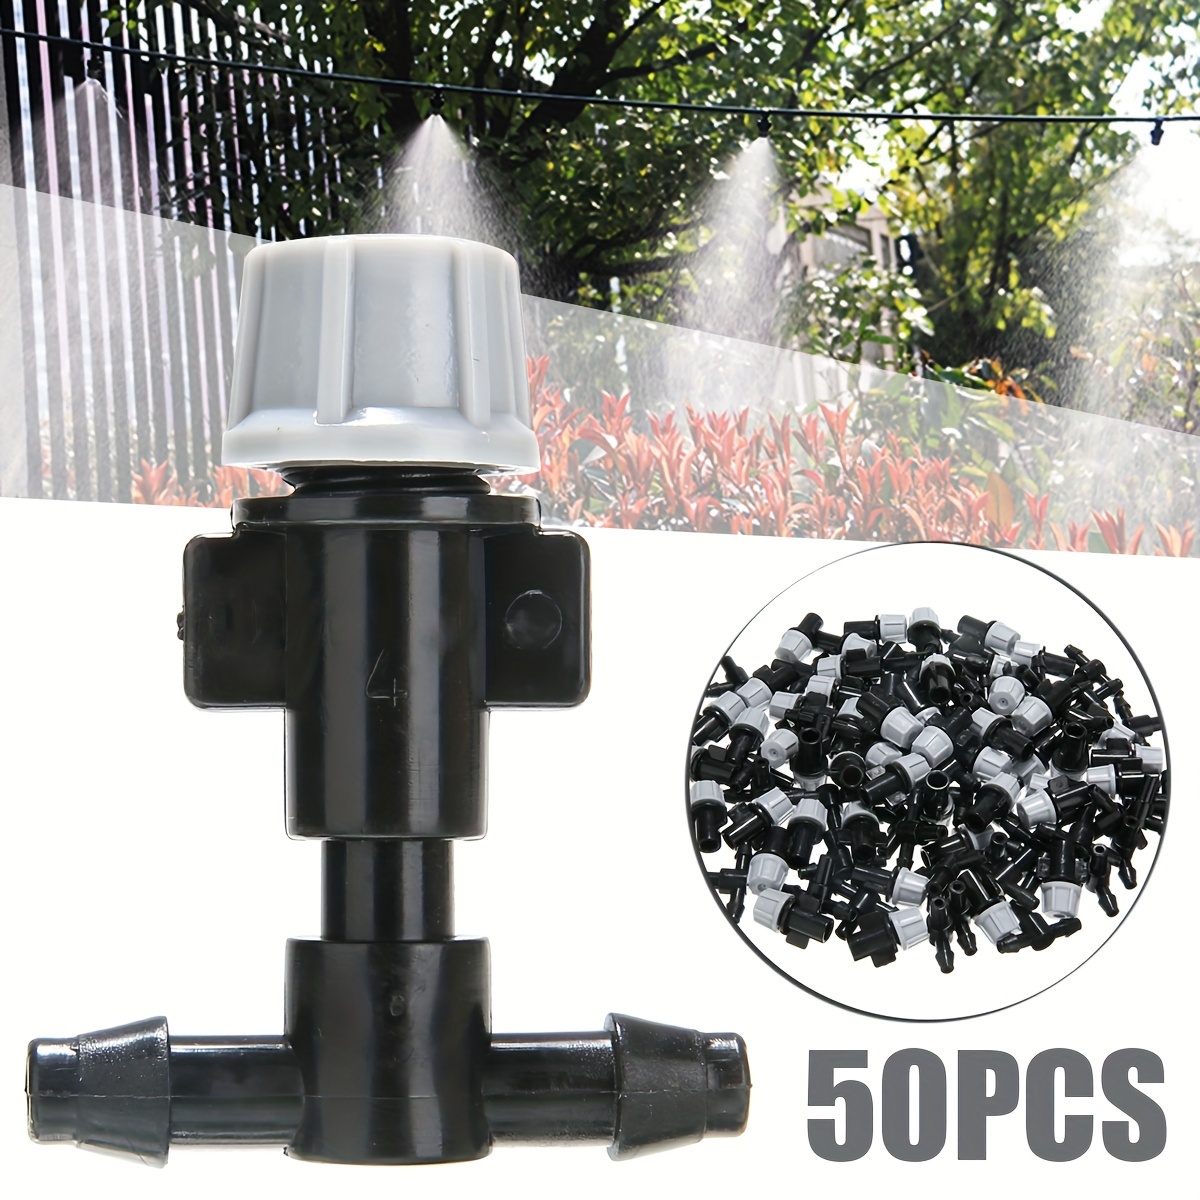 MOIAK 50 goteros de microflujo de riego de jardín, sistema de emisor de  aspersores ajustable micro cabezal de goteo para sistema de riego (50  piezas)